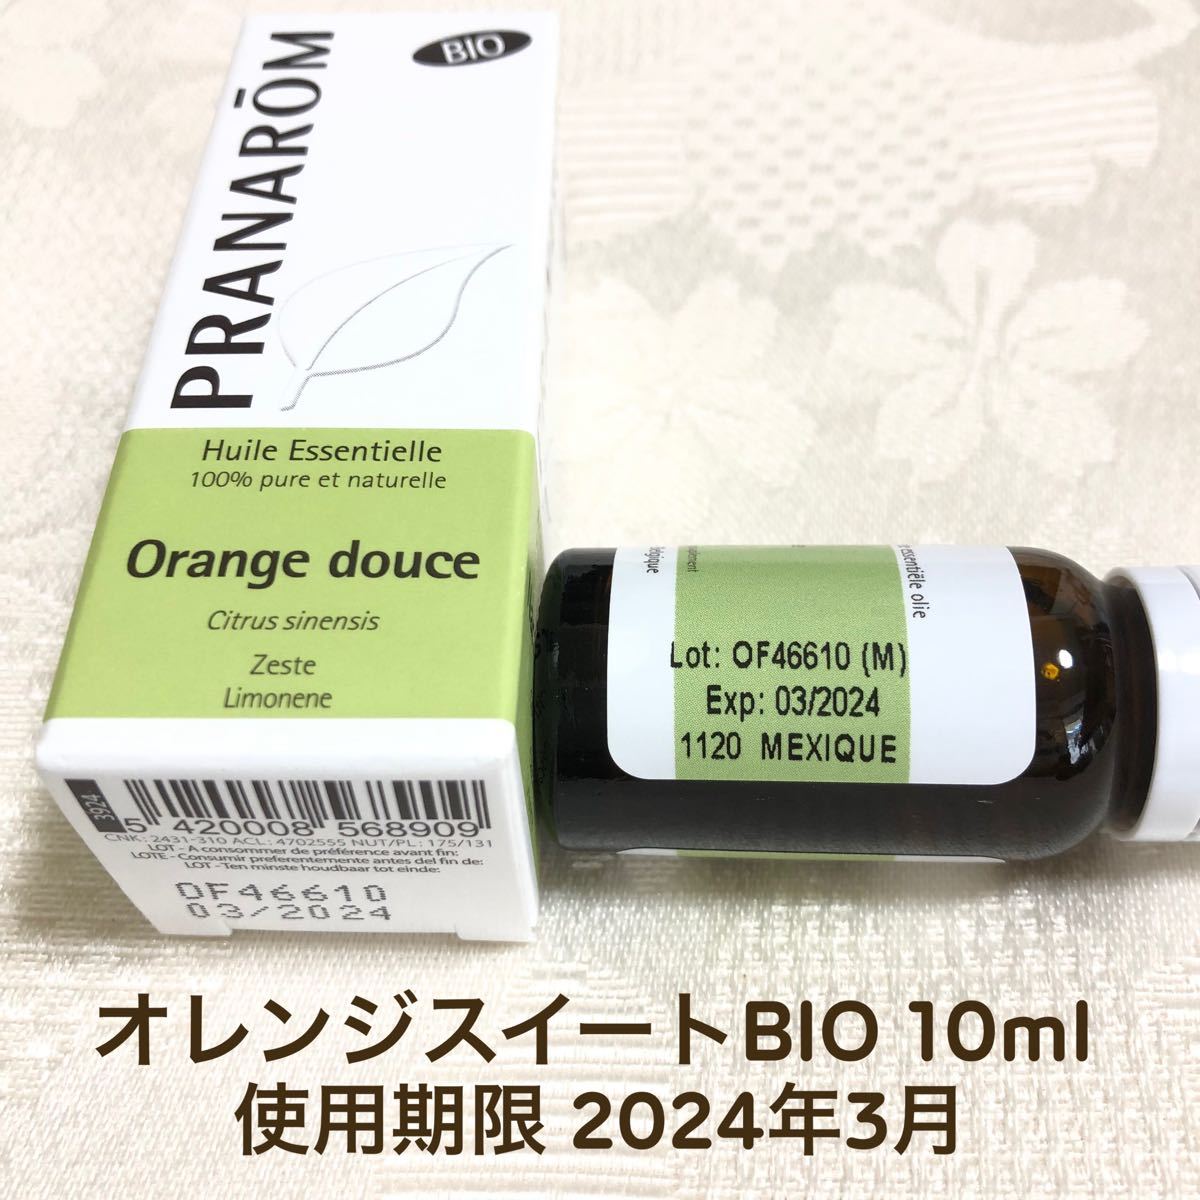 【オレンジスイート BIO 】10ml プラナロム 精油